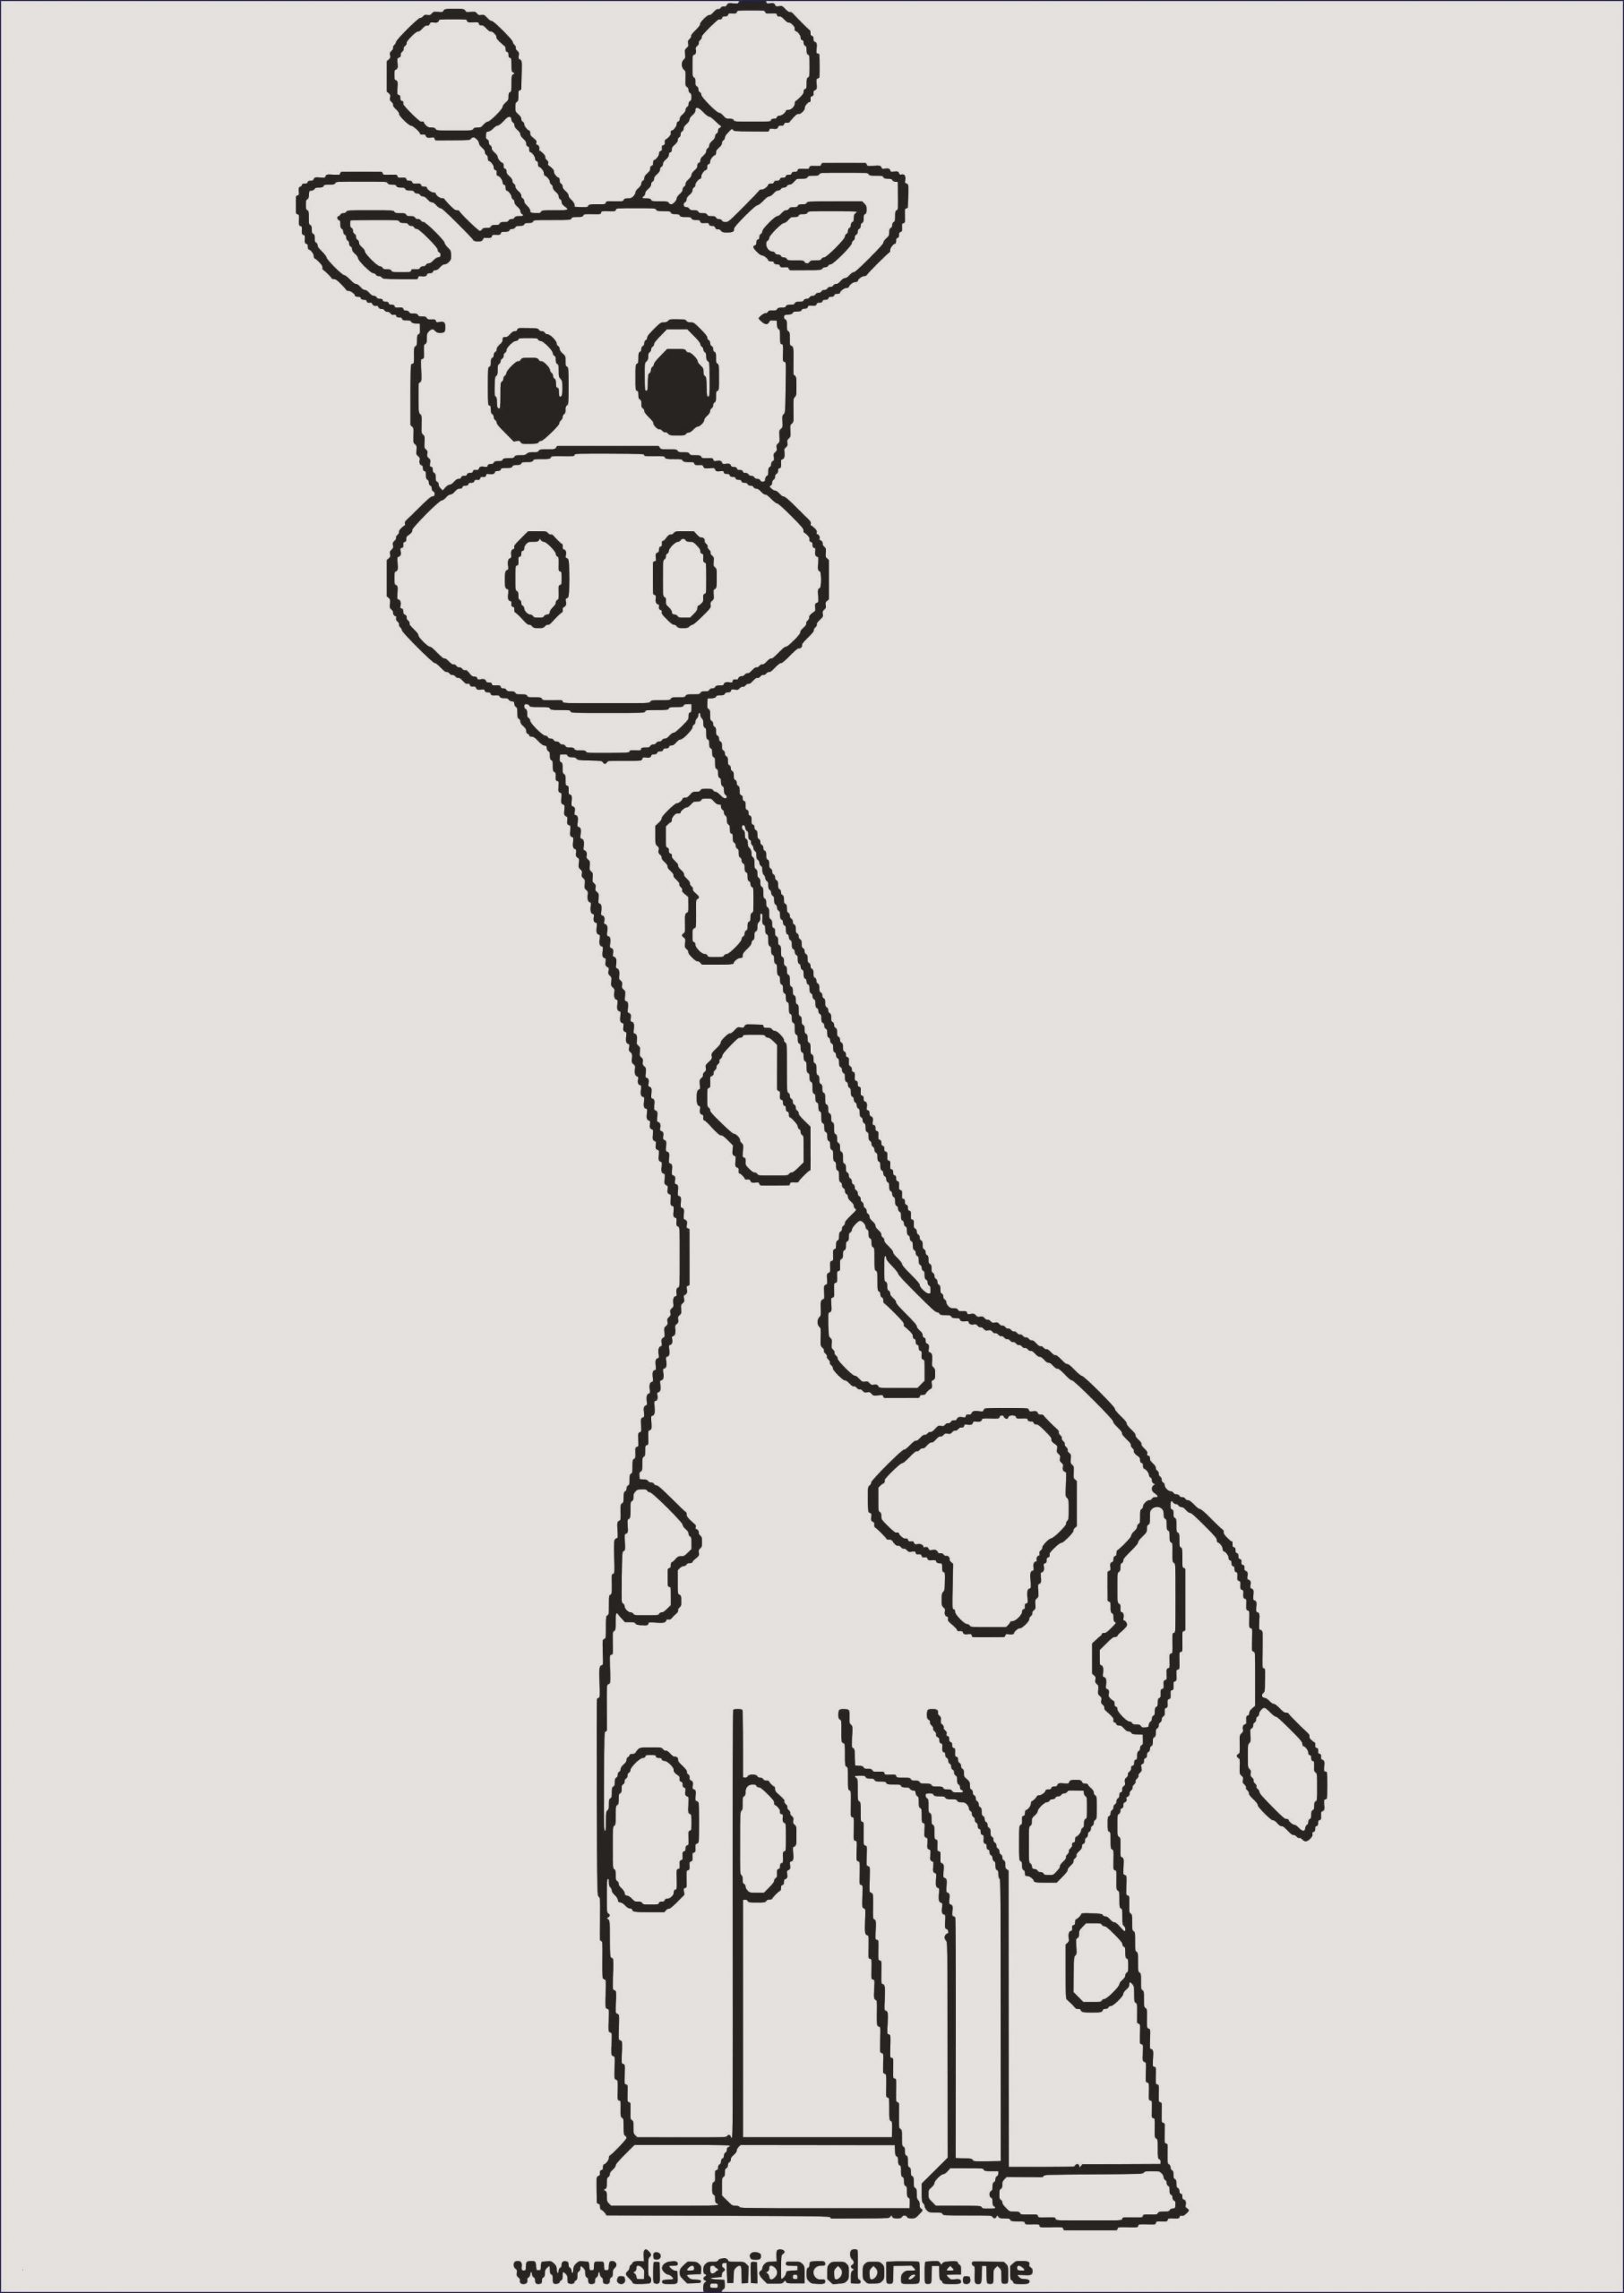 Einzigartig Malvorlagen Tiere Giraffe | Malvorlagen Tiere innen Giraffe Ausmalbild